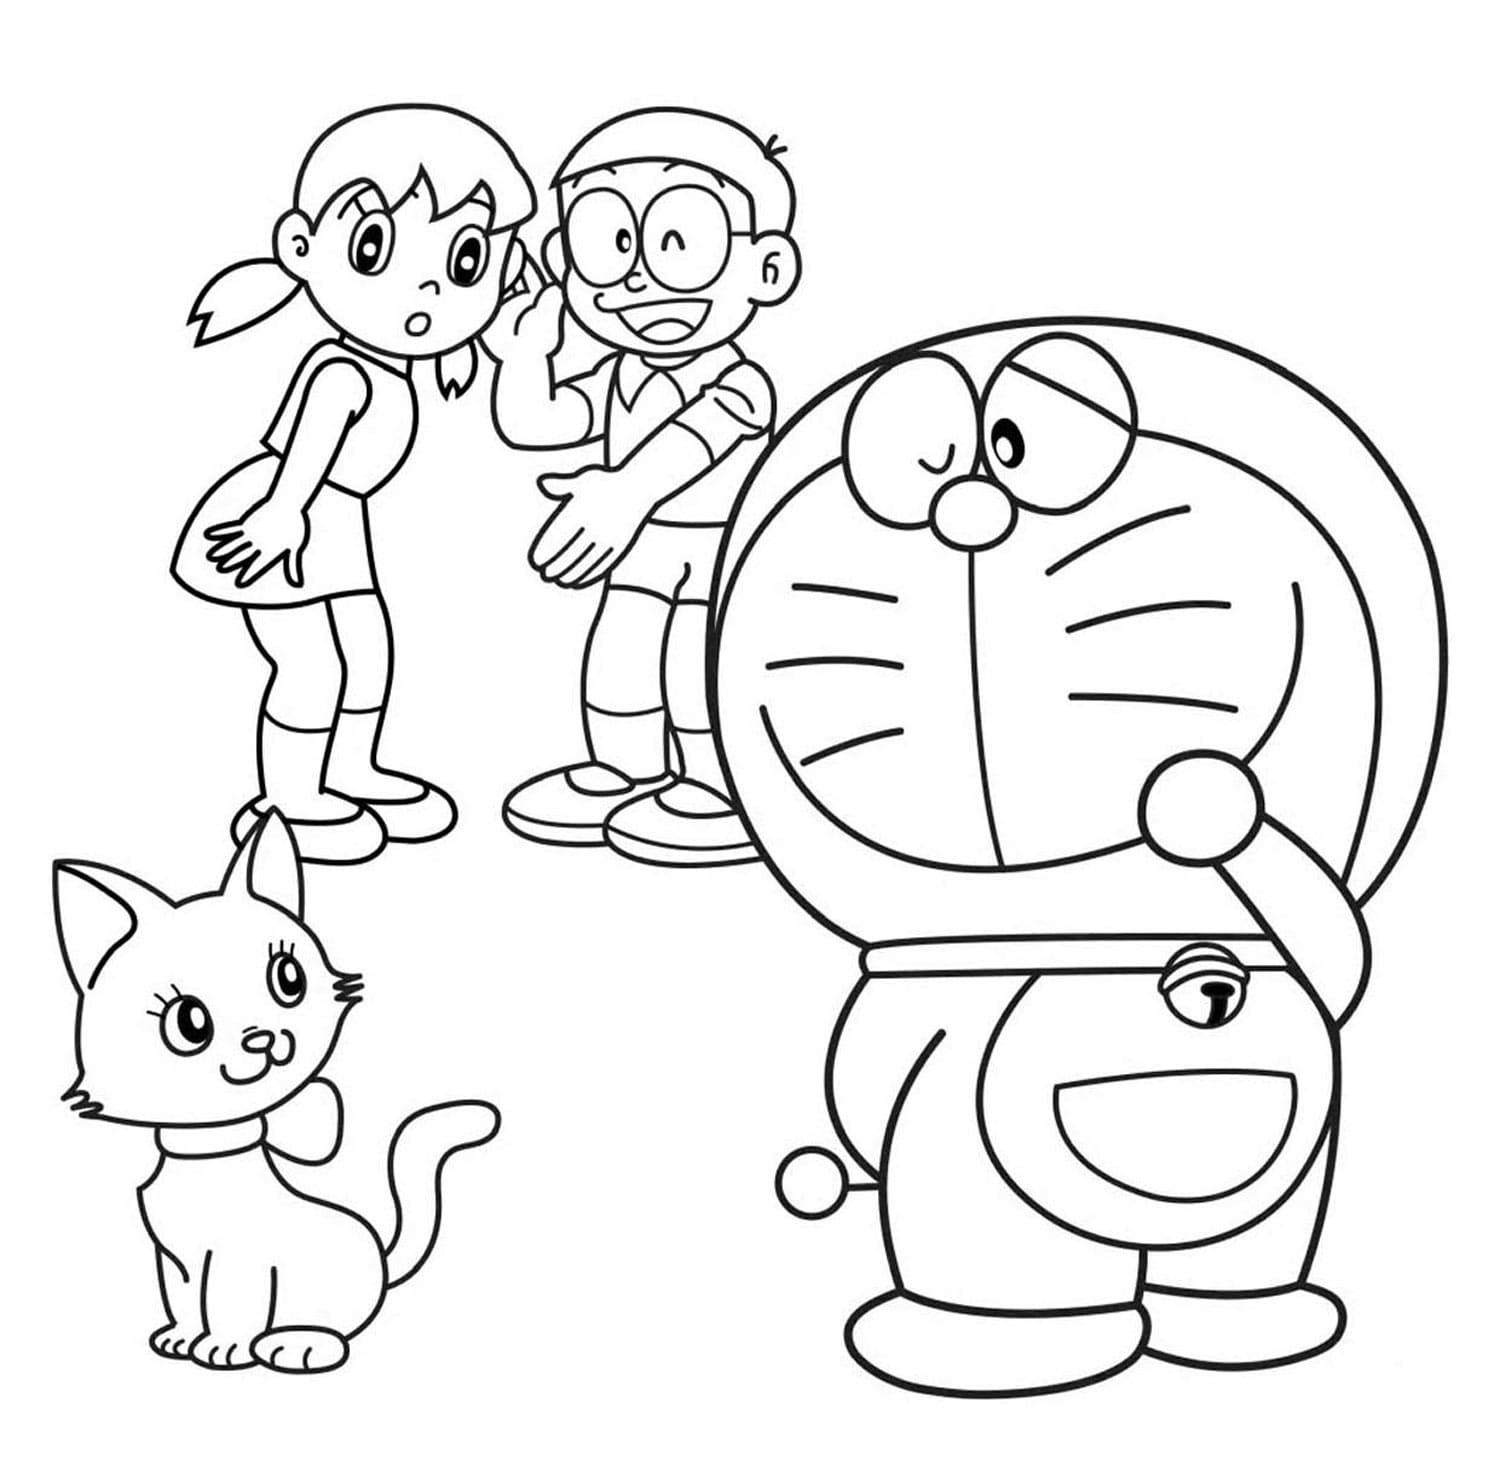 Nếu bạn yêu thích Doraemon, hãy đến để chiêm ngưỡng những bức tranh vẽ tuyệt vời của nghệ sĩ! Chú mèo máy đáng yêu này sẽ cho bạn nhiều cảm hứng để tạo ra những tác phẩm sáng tạo của riêng mình.